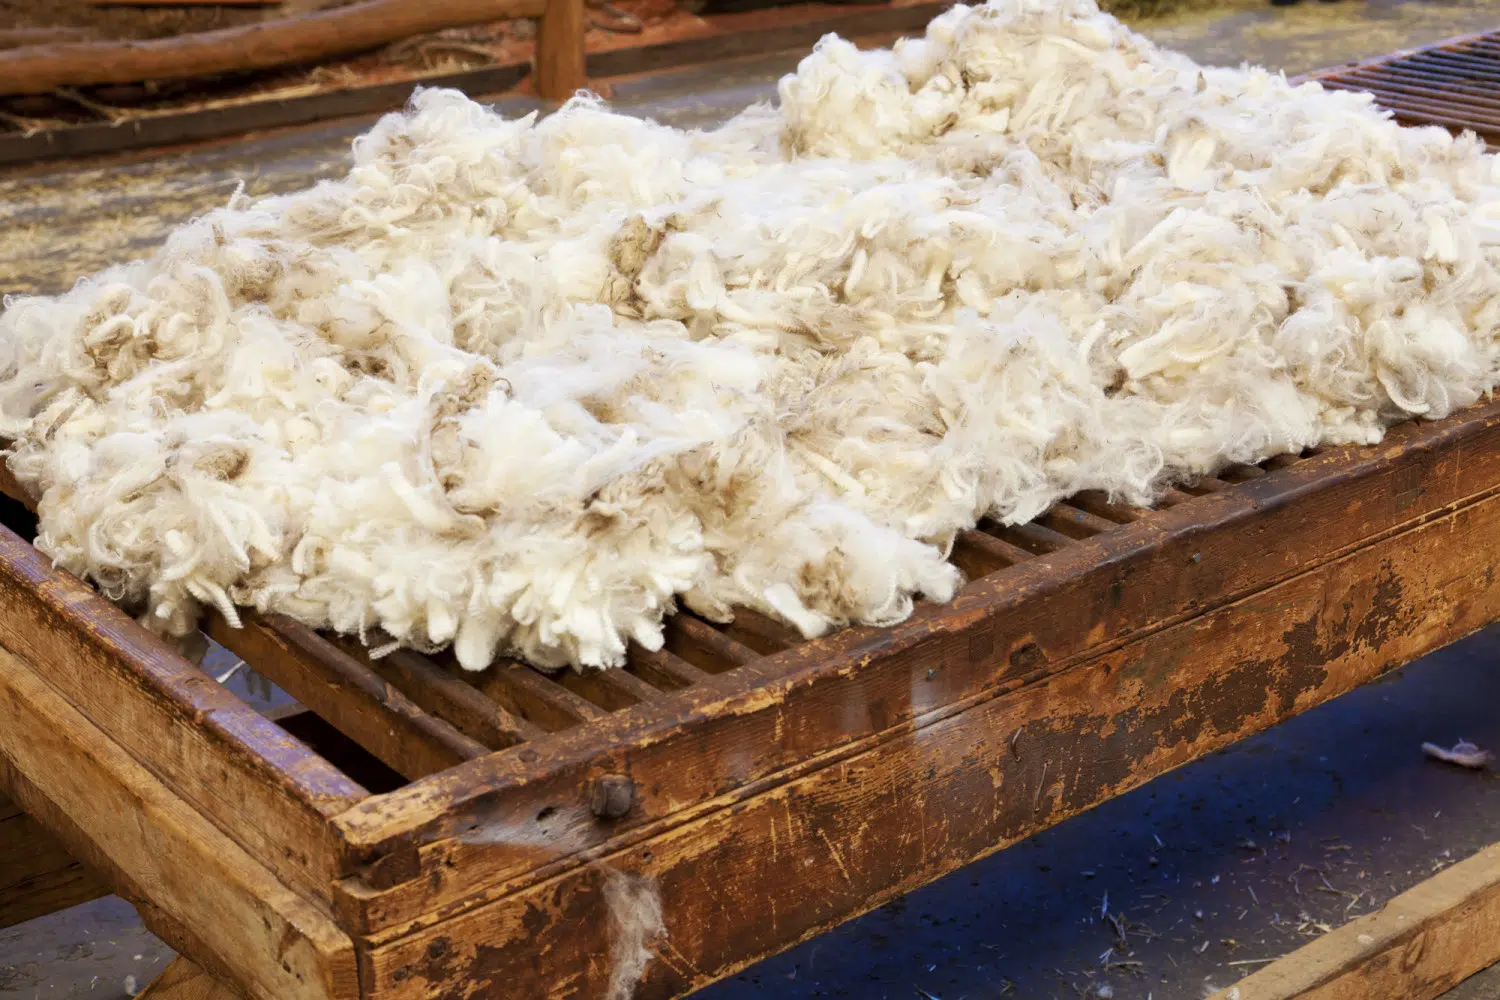 Freshly sheared wool